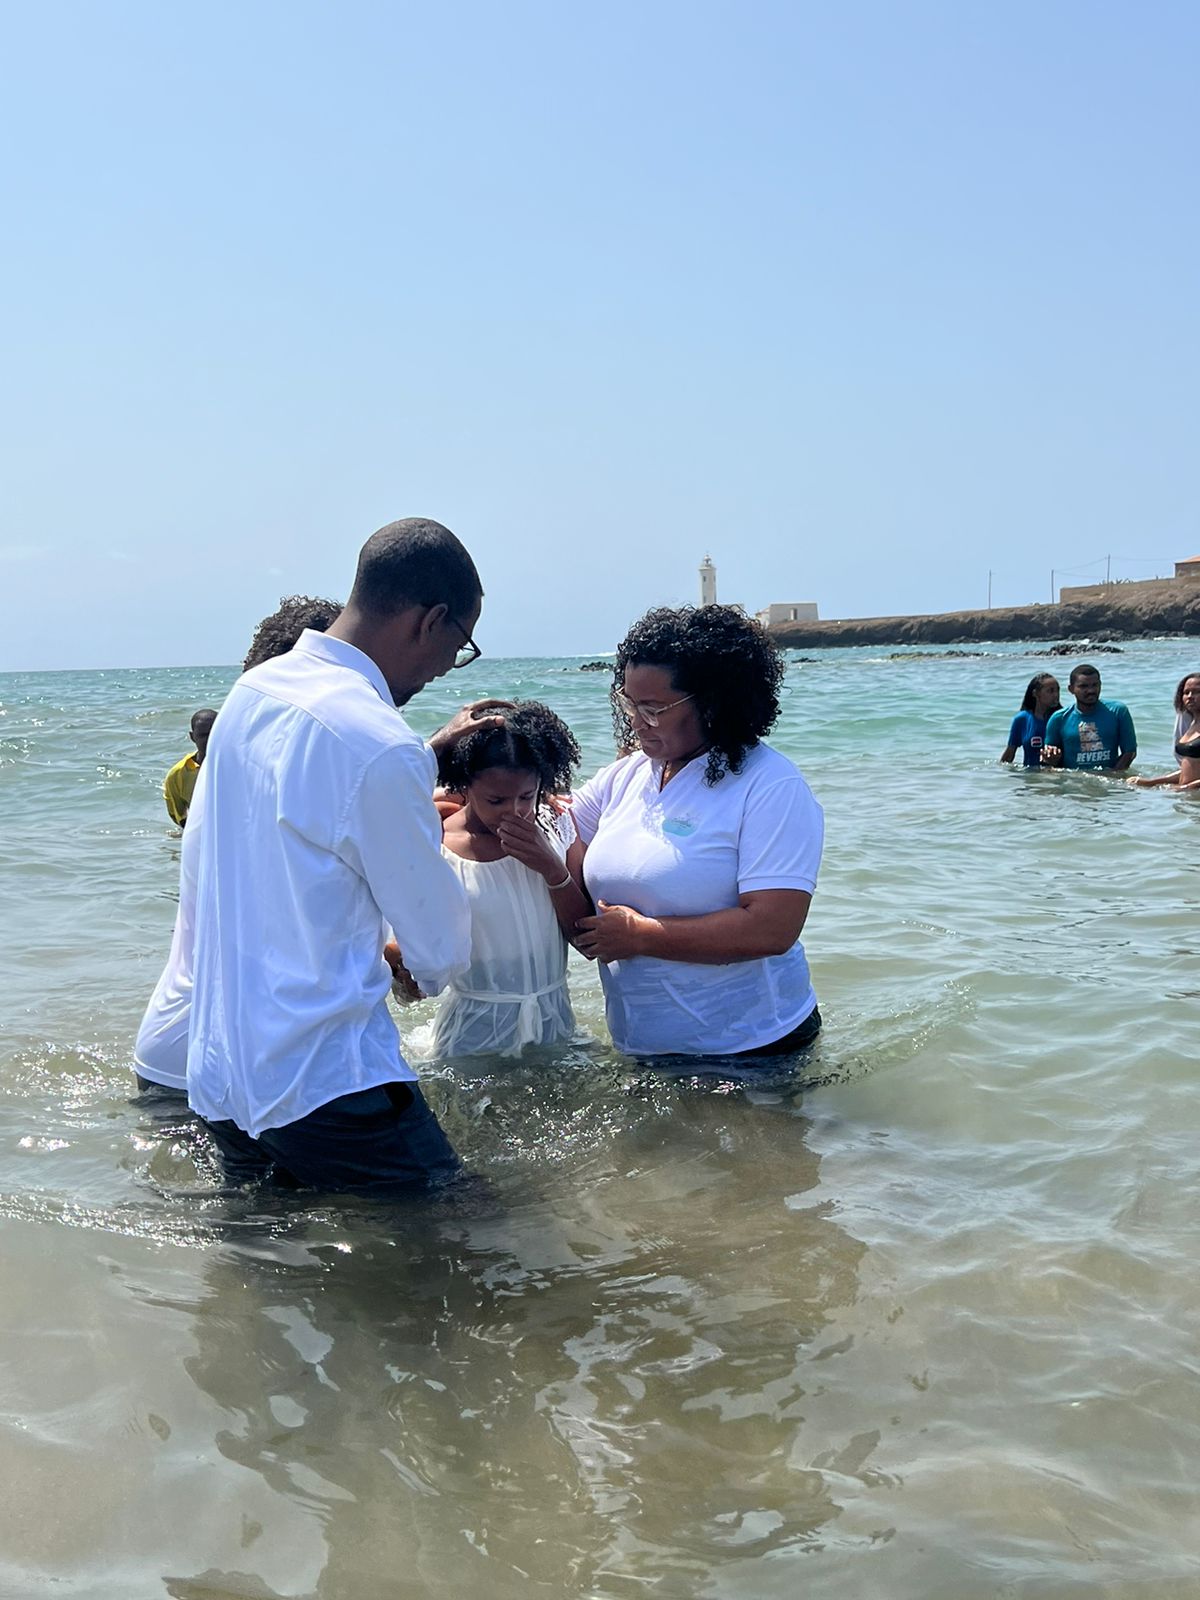 BAPTISMOS DE PÁSCOA EM CABO VERDE